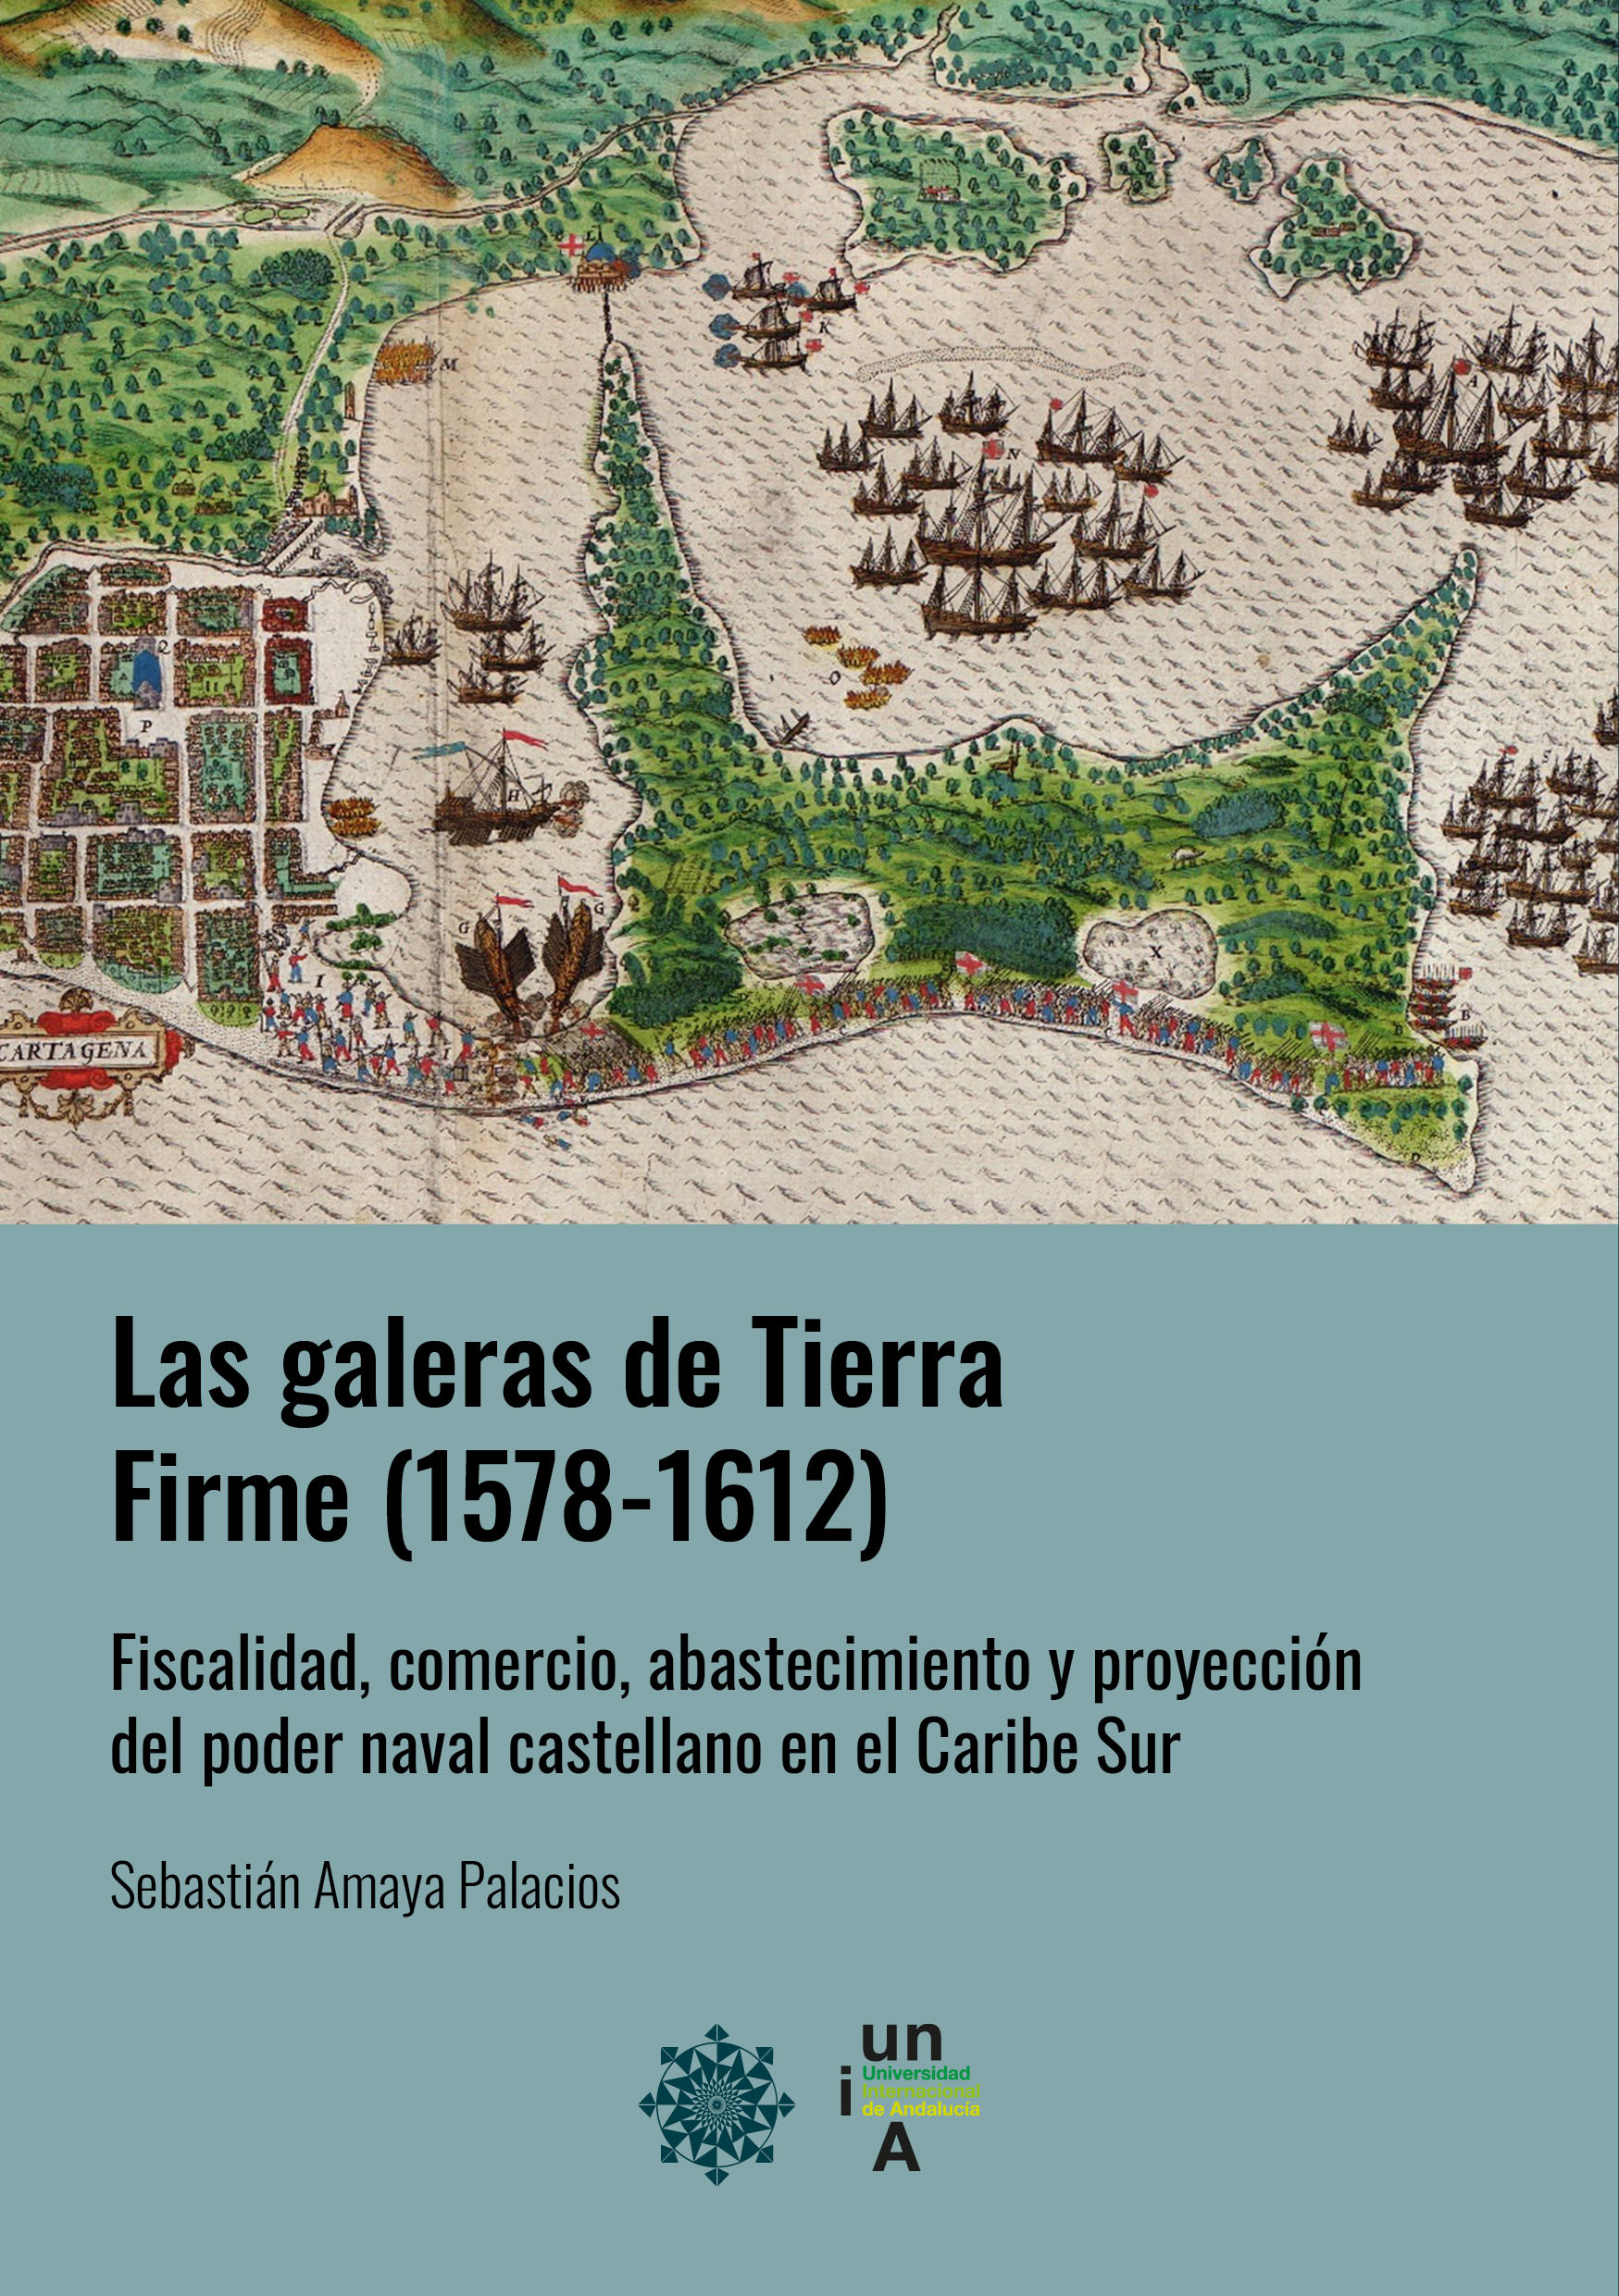 Imagen de portada del libro Las galeras de Tierra Firme (1578-1612)